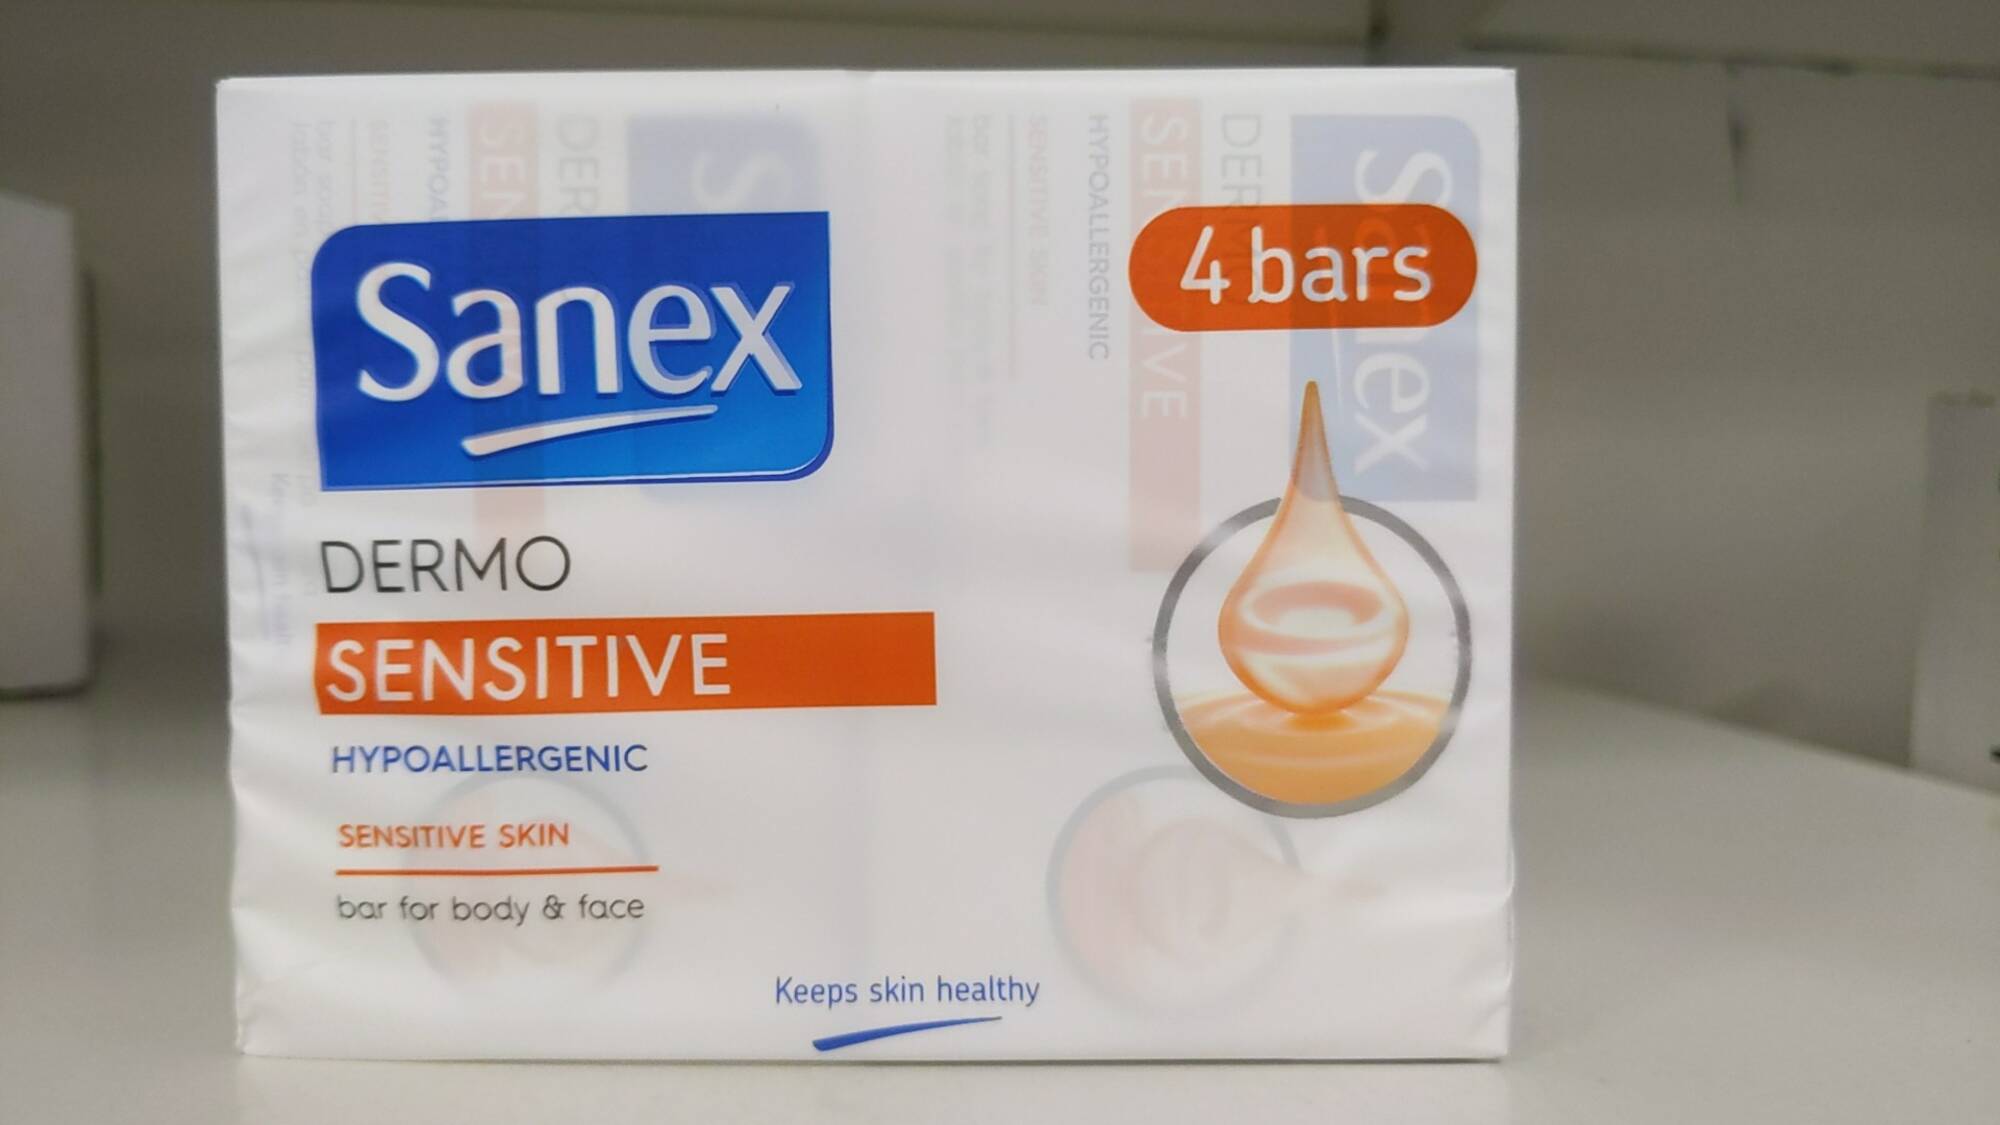 SANEX - Dermo sensitive - Bar for body & face